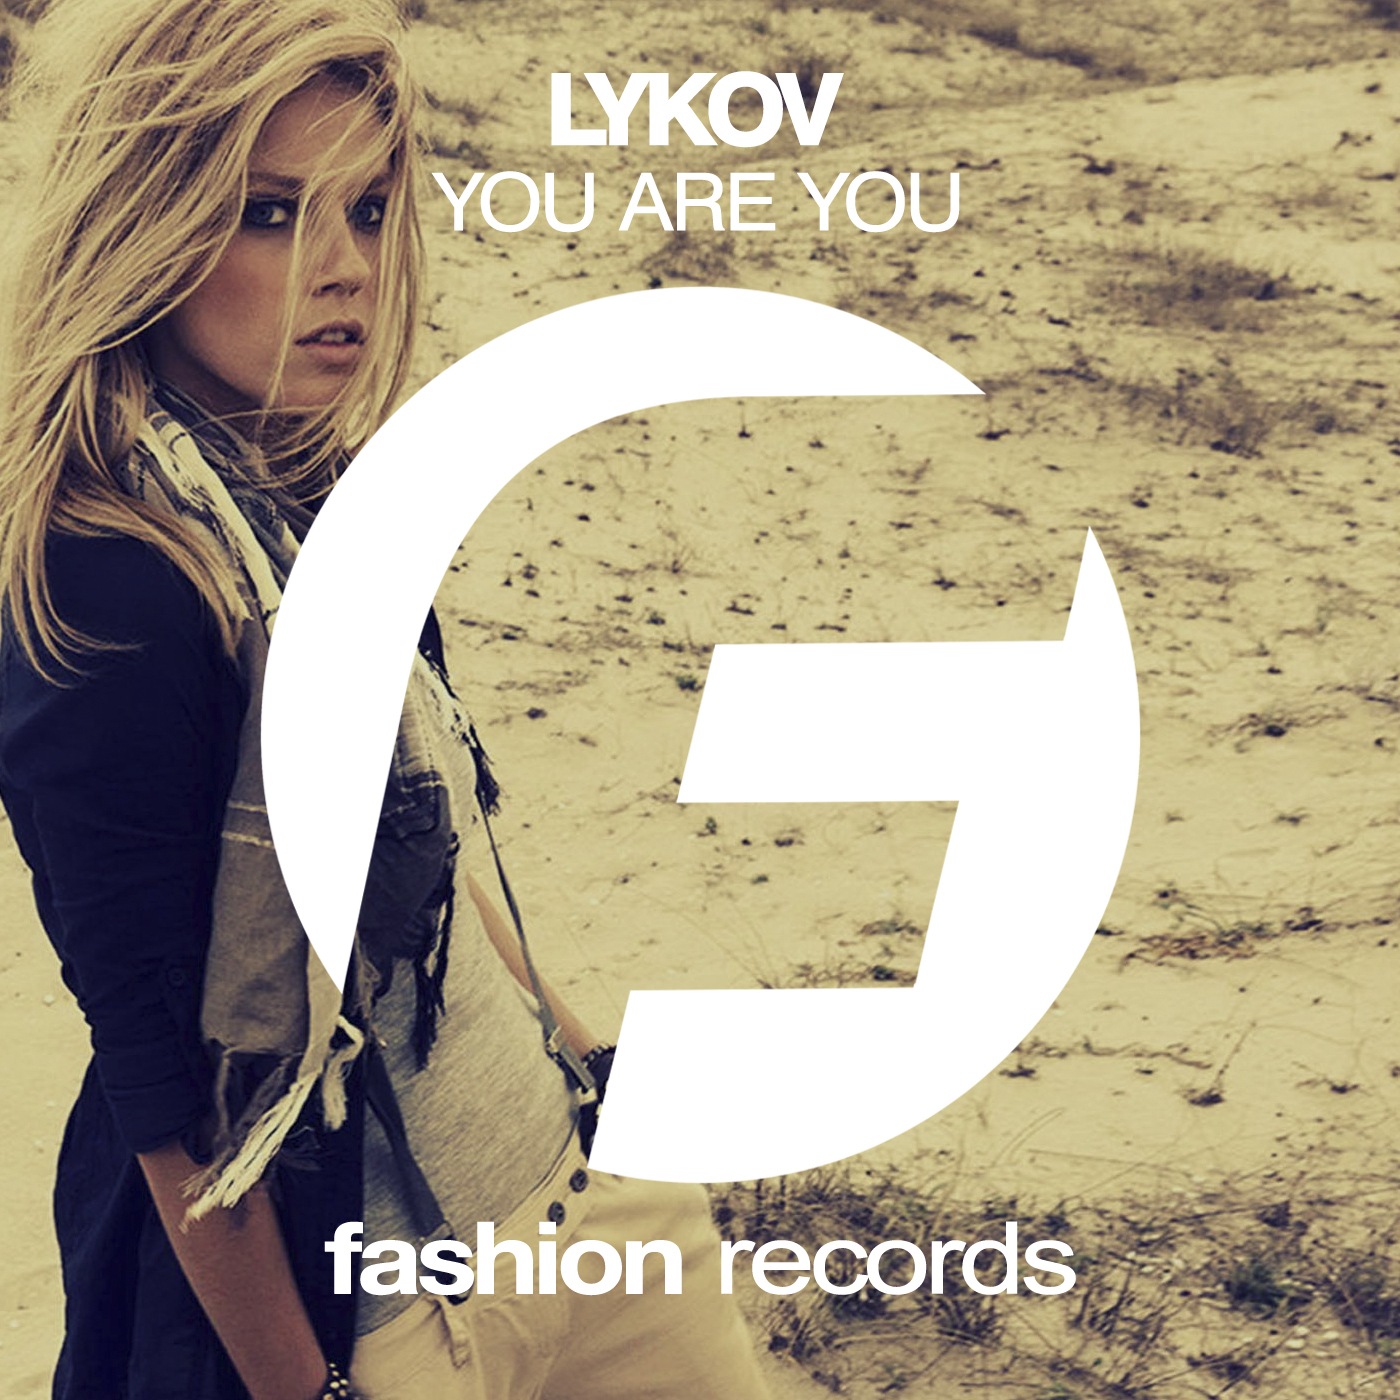 Модные песни на телефон. Треки 2016. Fashion музыка. Fashion Music records. Lykov Living 4 you (Original Mix).